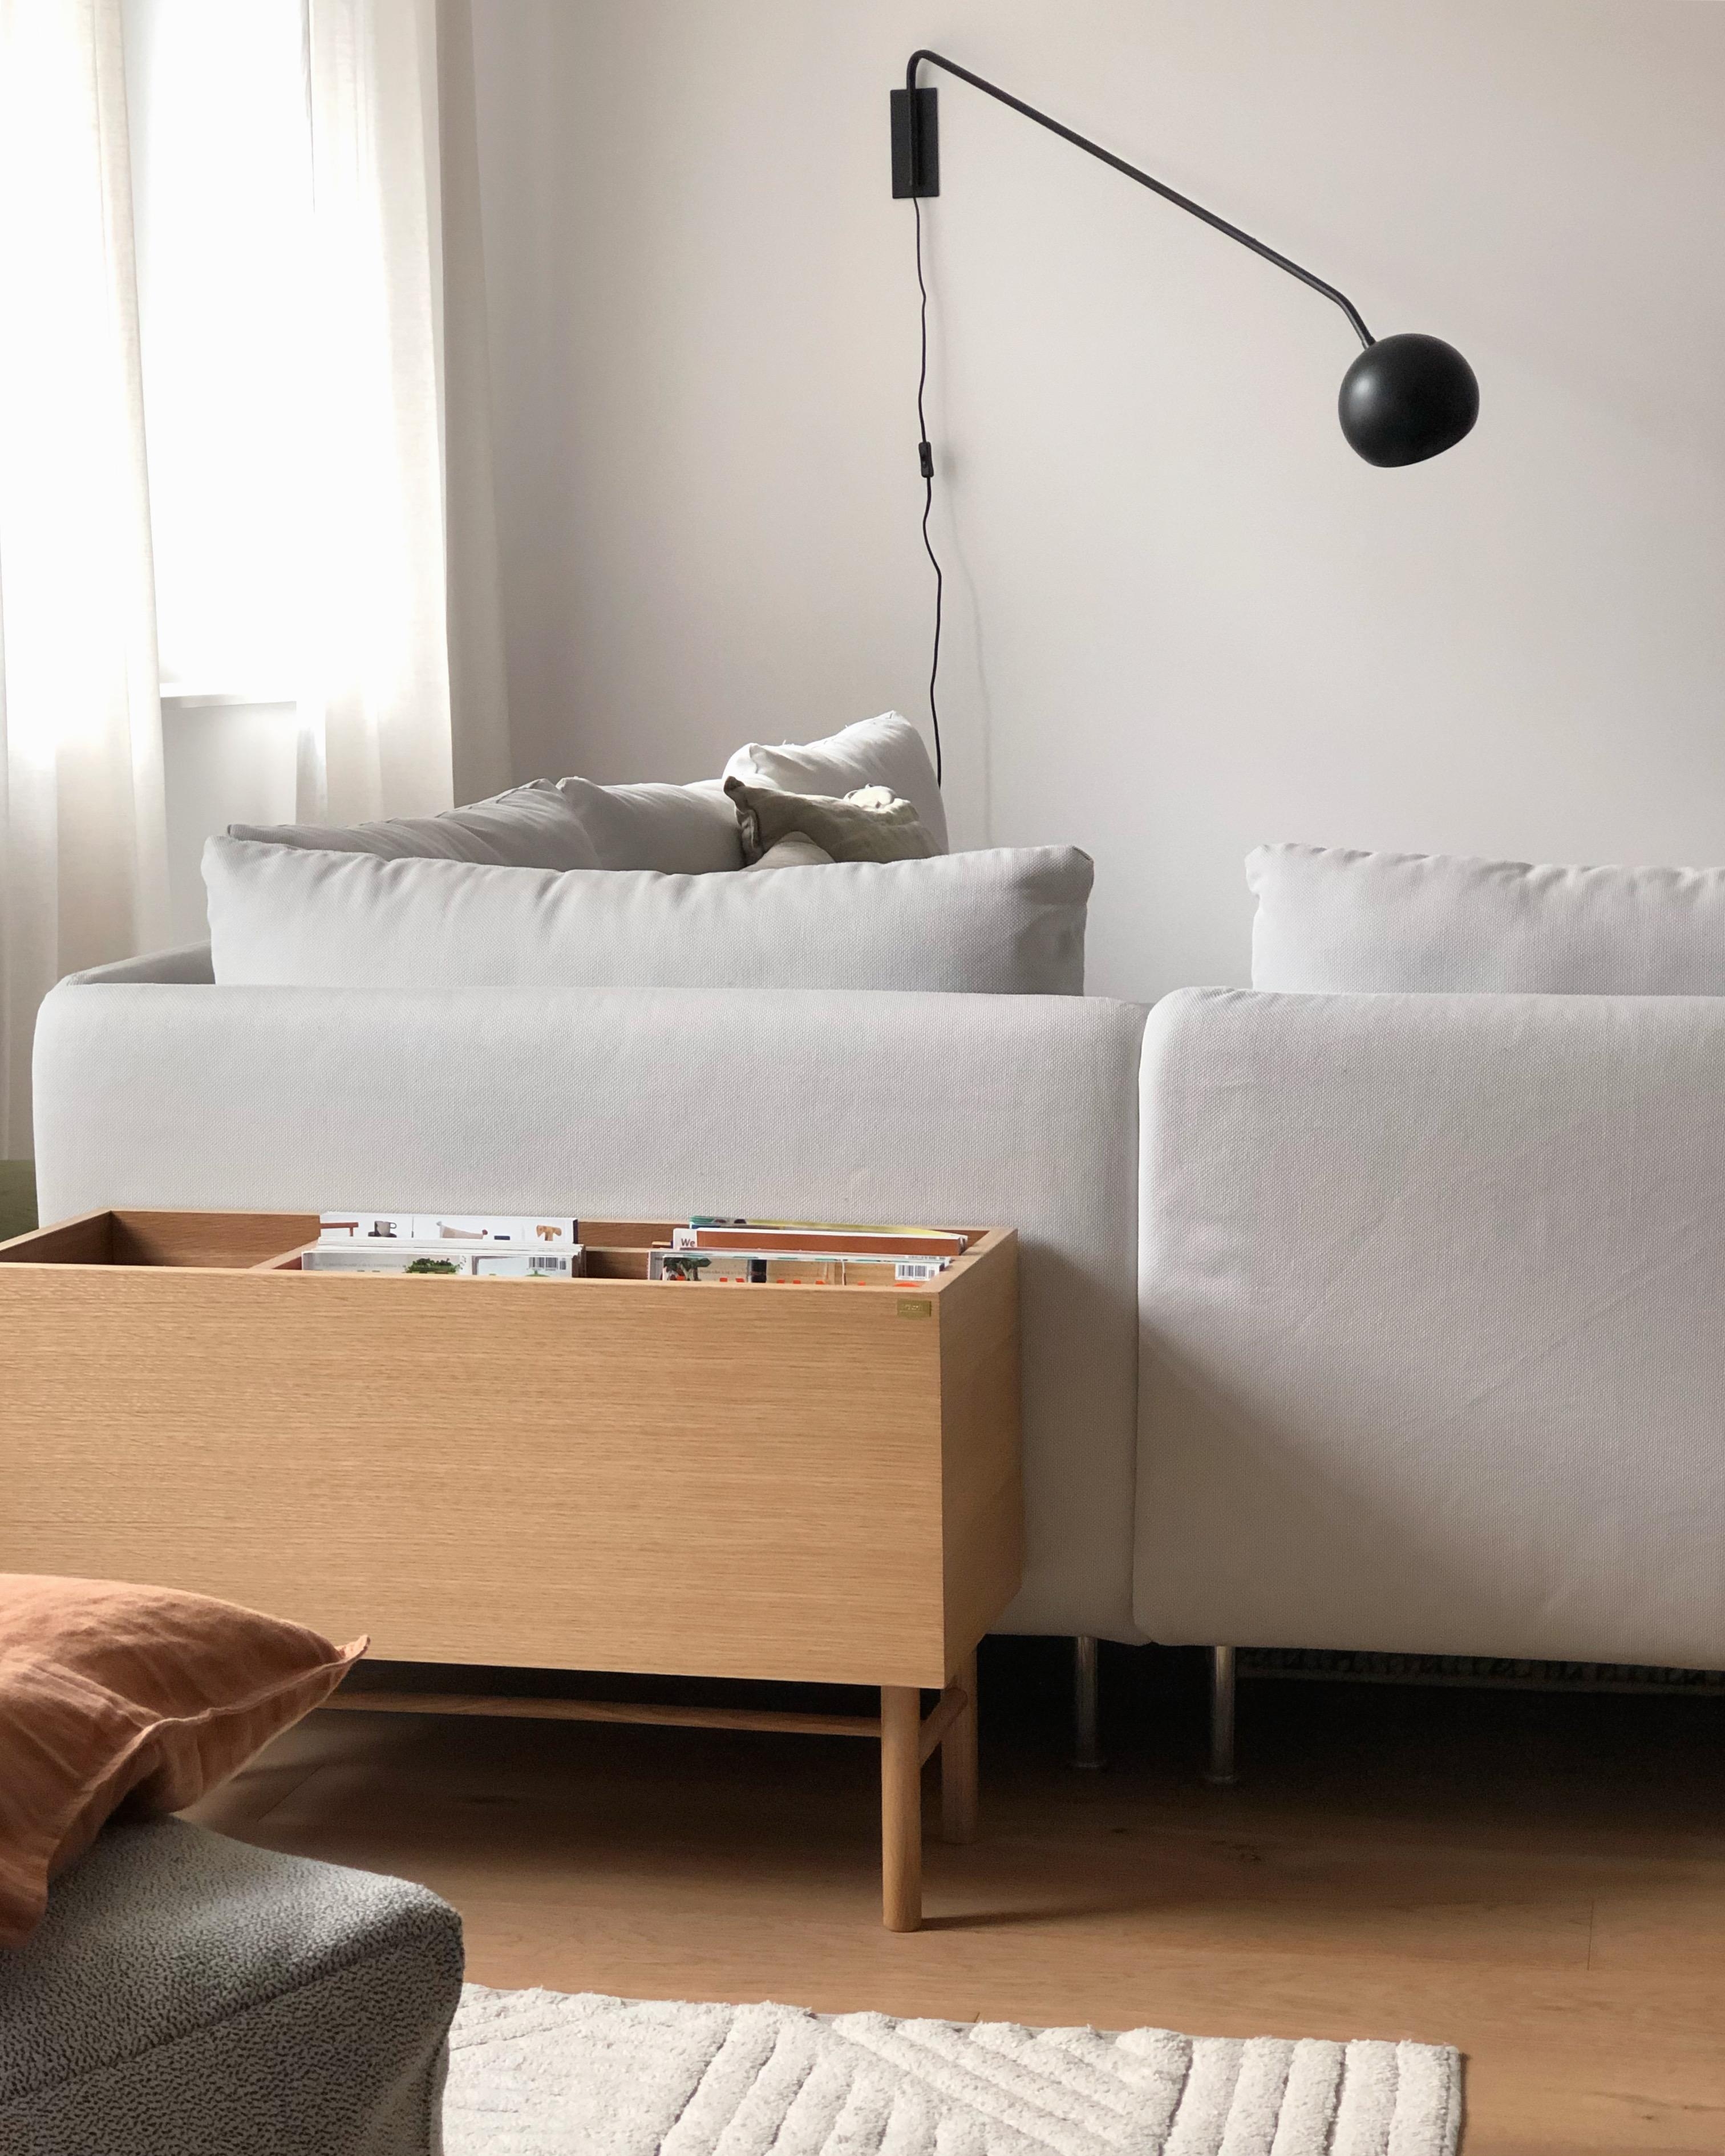 #wohnzimmer #livingroom #couch #couchstyle #sofa #ikea #wanddeko #skandinavisch #interior #interieur #home #minimalismus